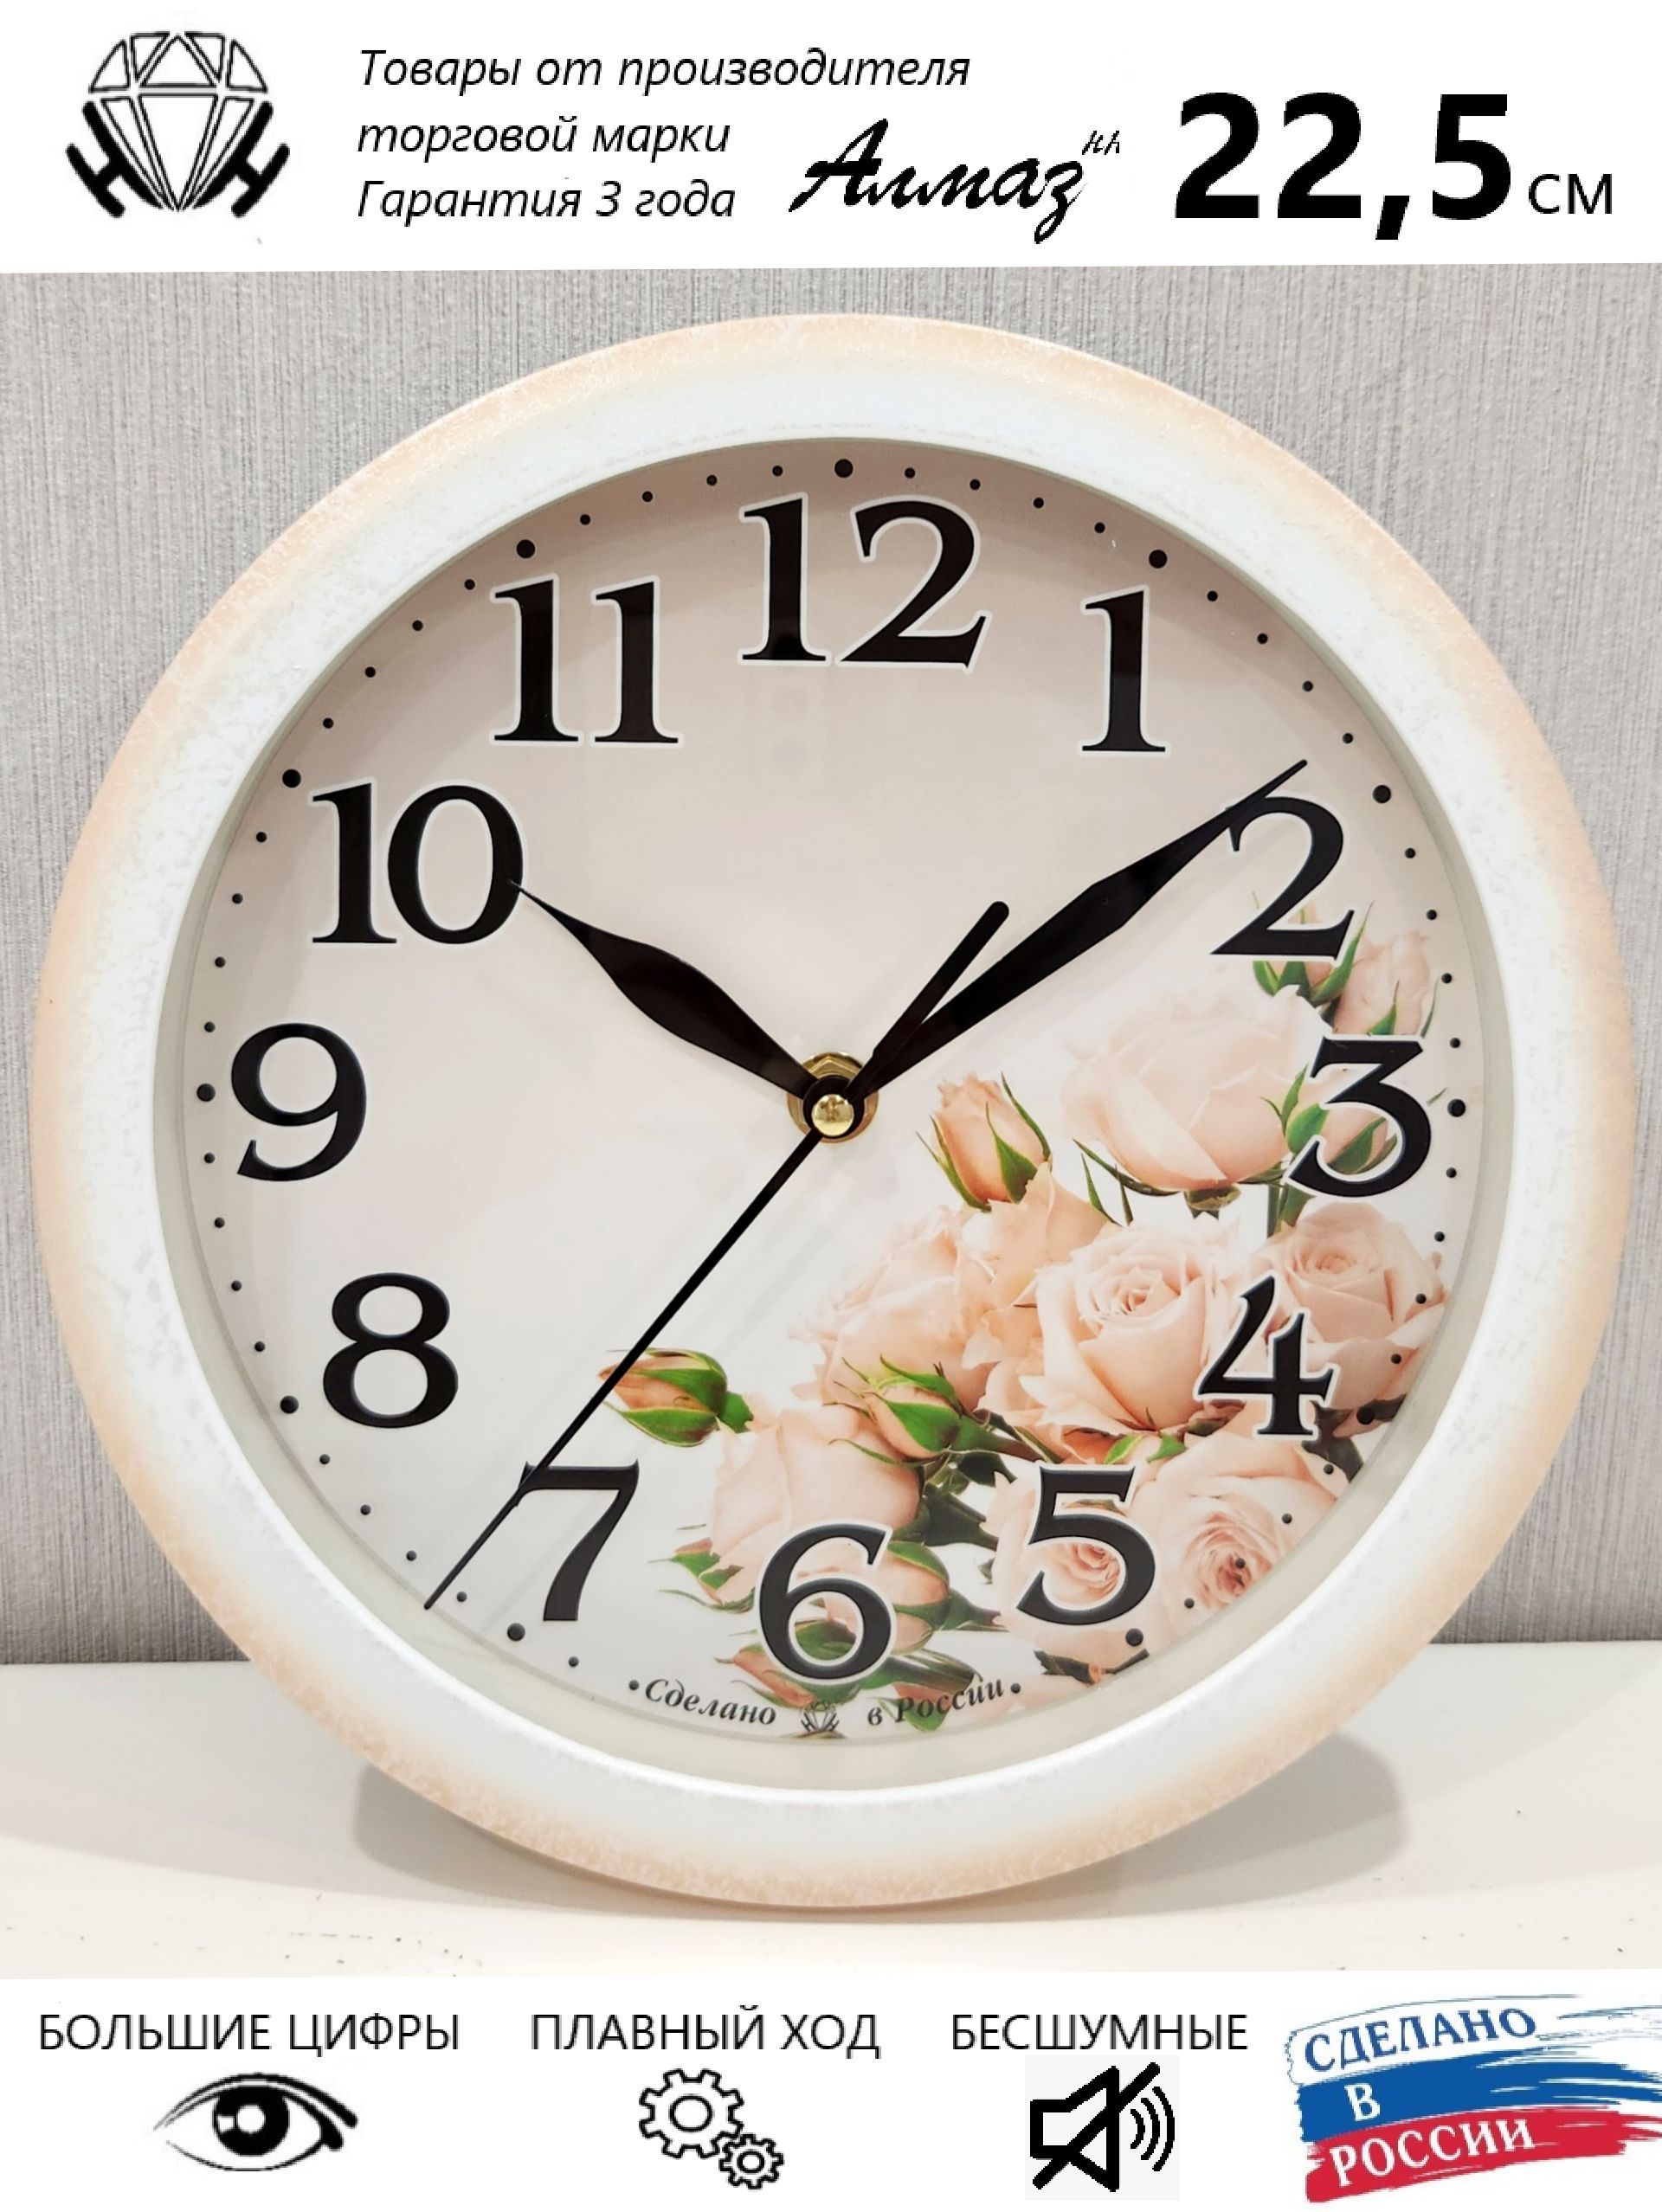 Самые красивые цветочные часы на сегодняшний день в мире